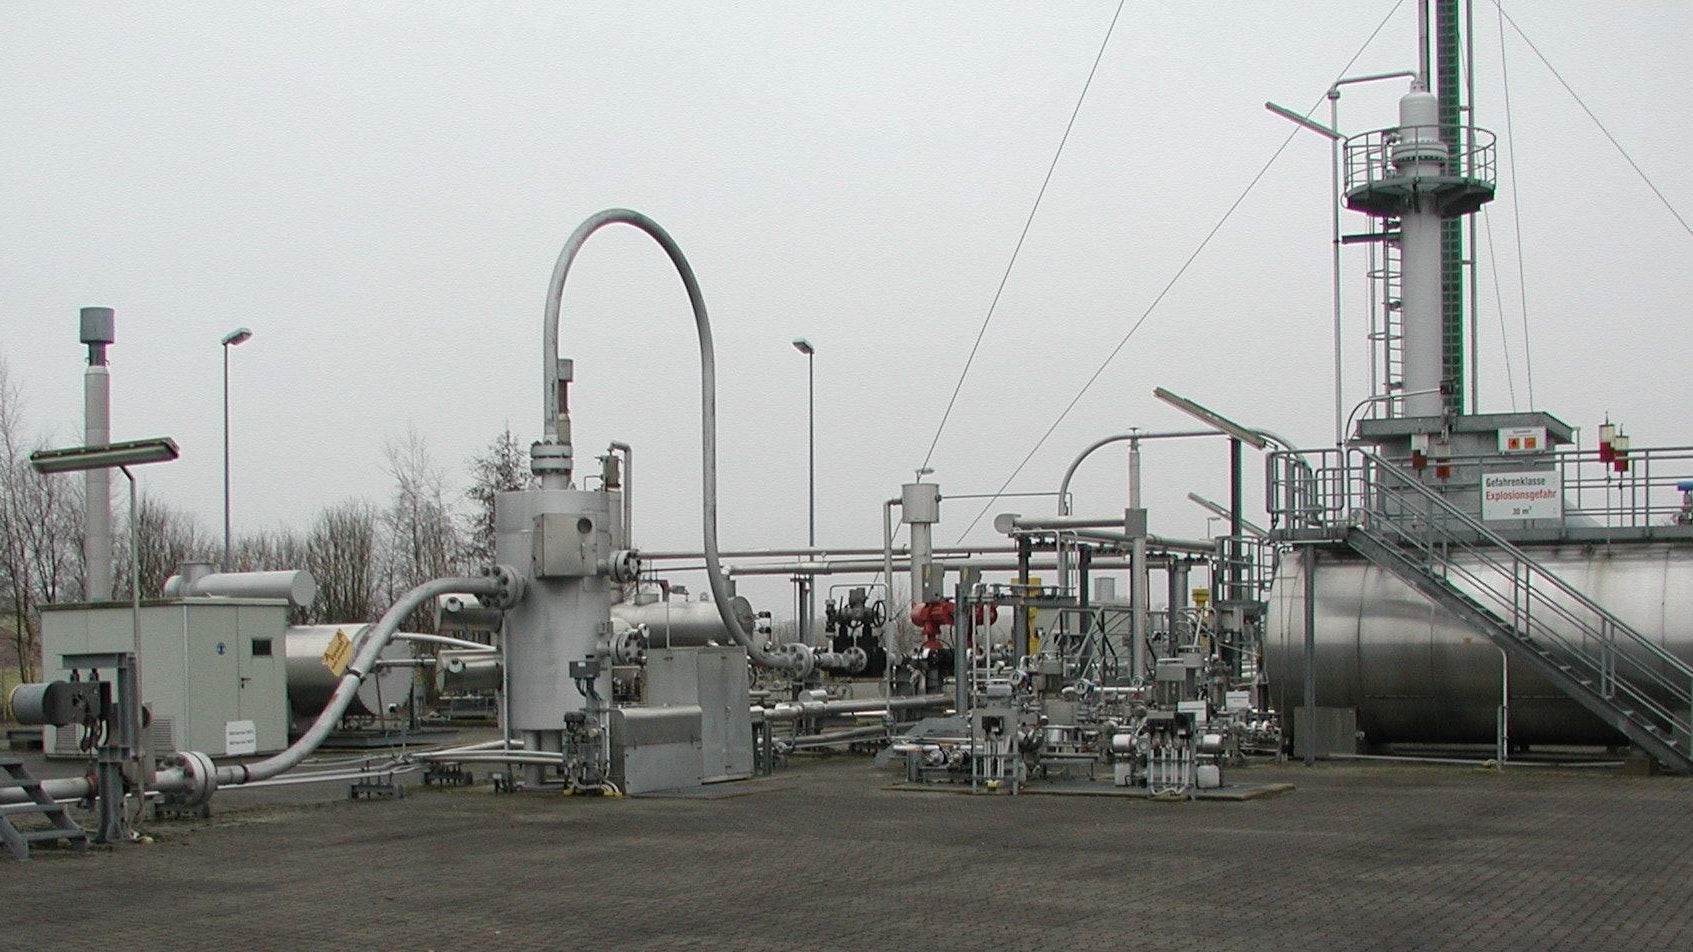 Bohrstation bei Kneheim: In der Gemeinde Lastrup wird seit Jahrzehnten Erdgas gefördert. Foto: Exxon-Mobil